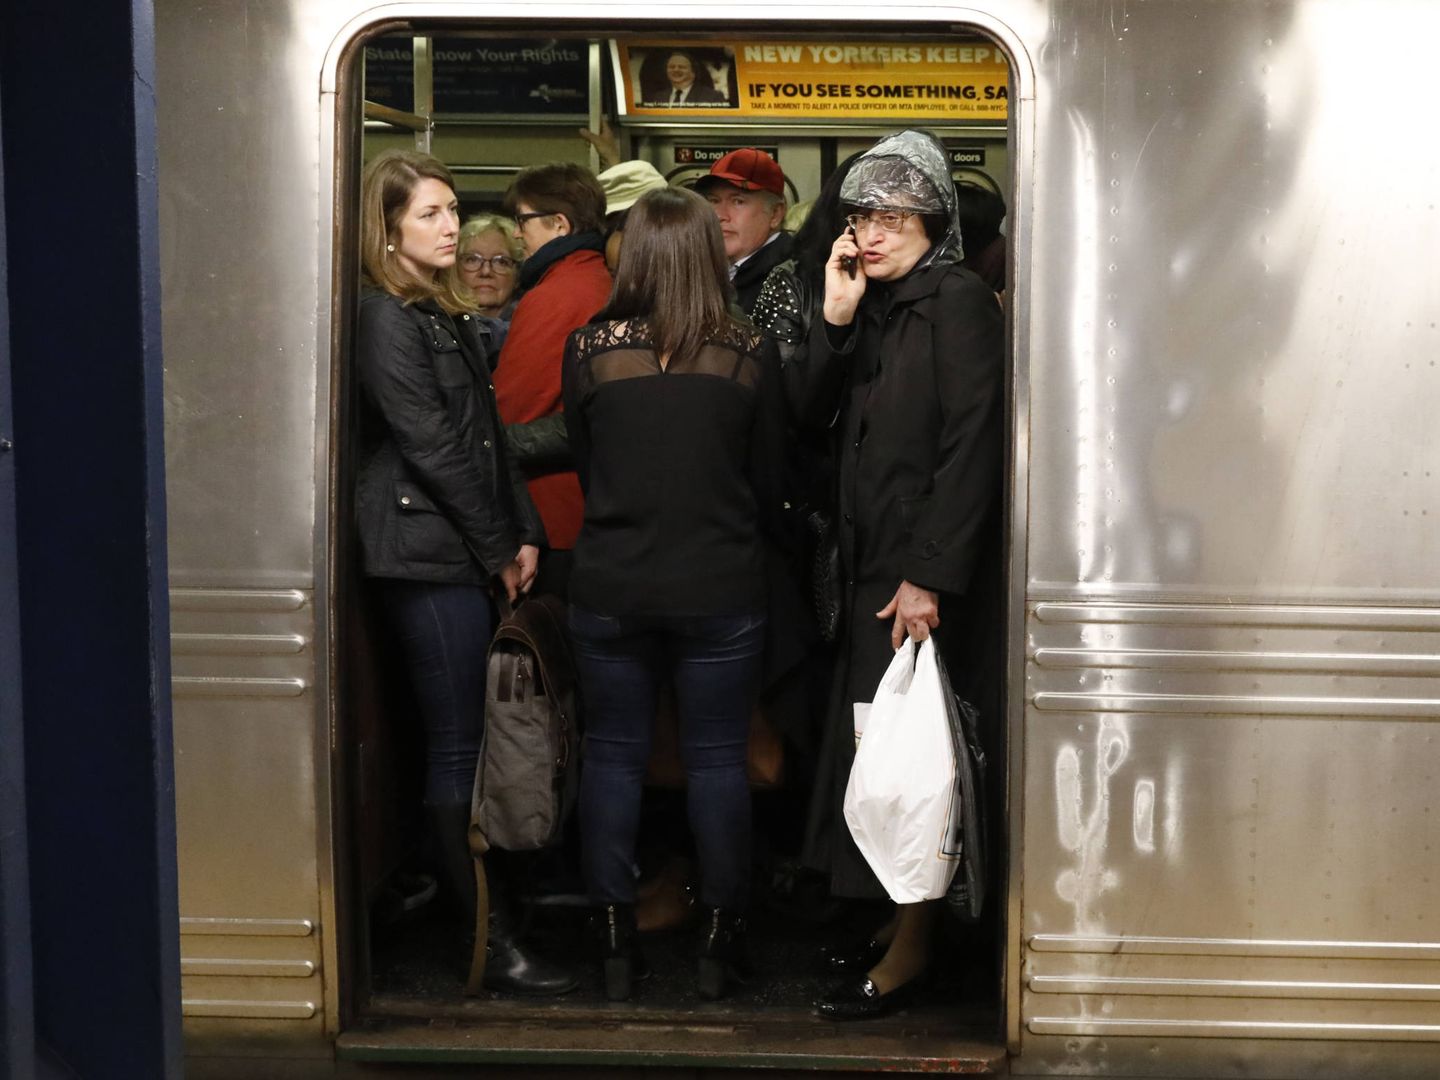 Pasajeros esperan dentro de un vagón de metro atestado tras una avería eléctrica, en Nueva York. (Reuters)